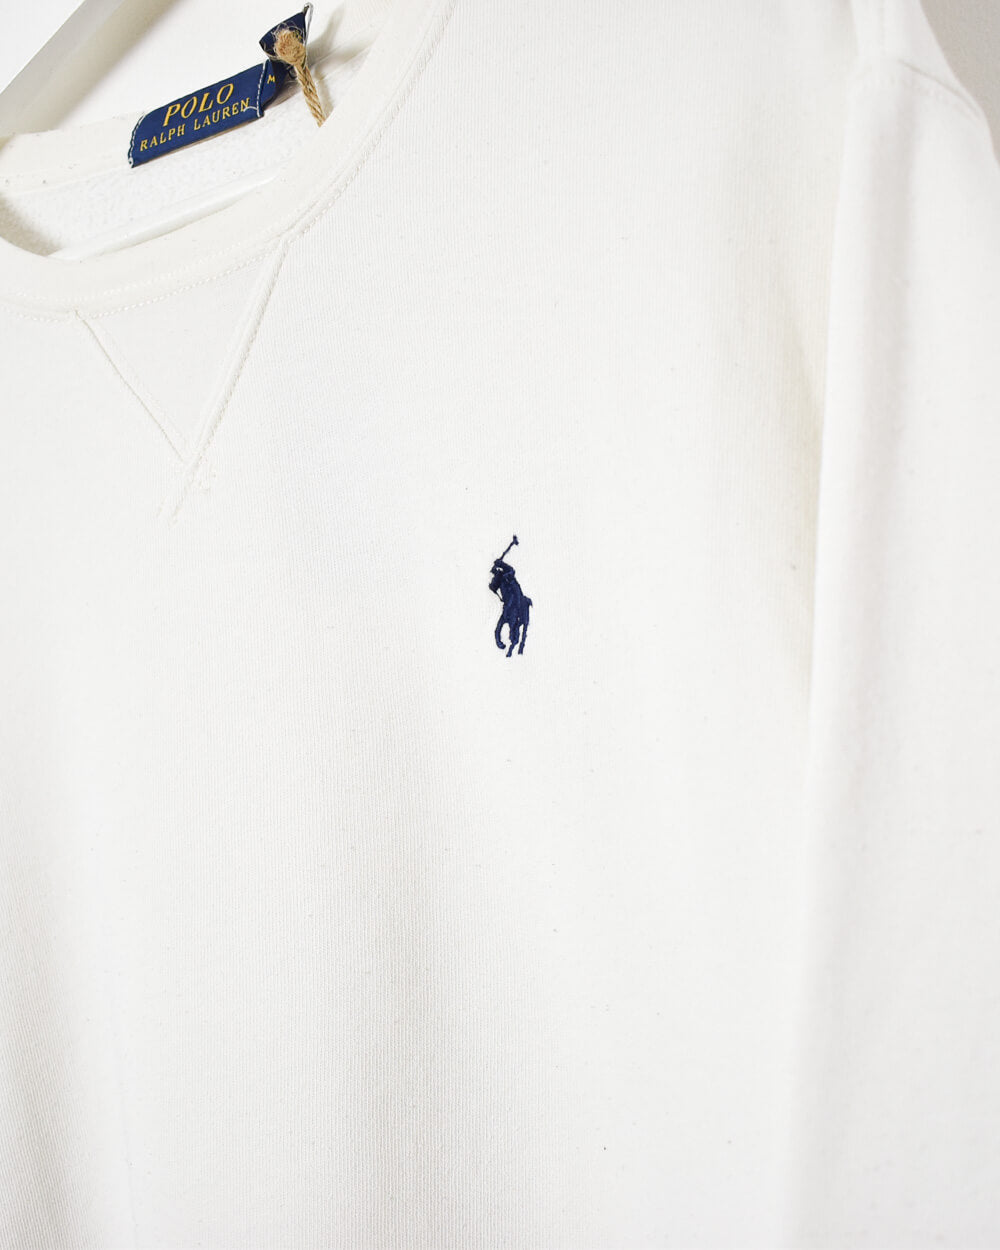 White Ralph Lauren Sweatshirt - Medium